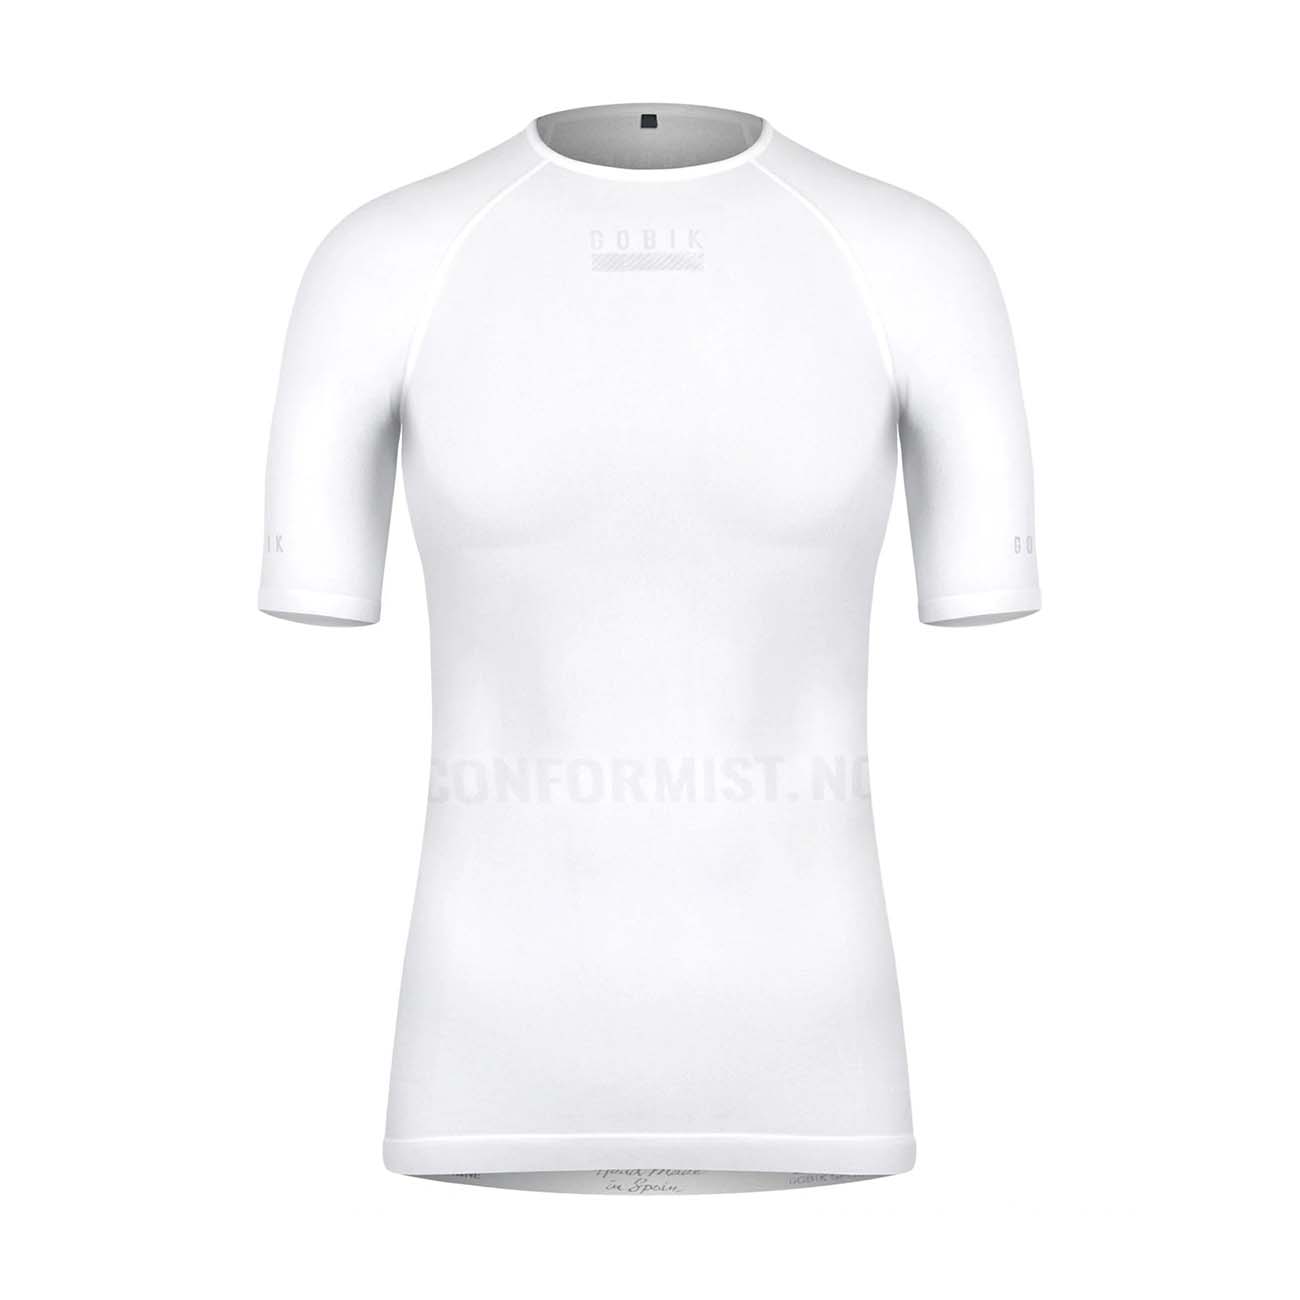 
                GOBIK Cyklistické triko s krátkým rukávem - LIMBER SKIN LADY - bílá
            